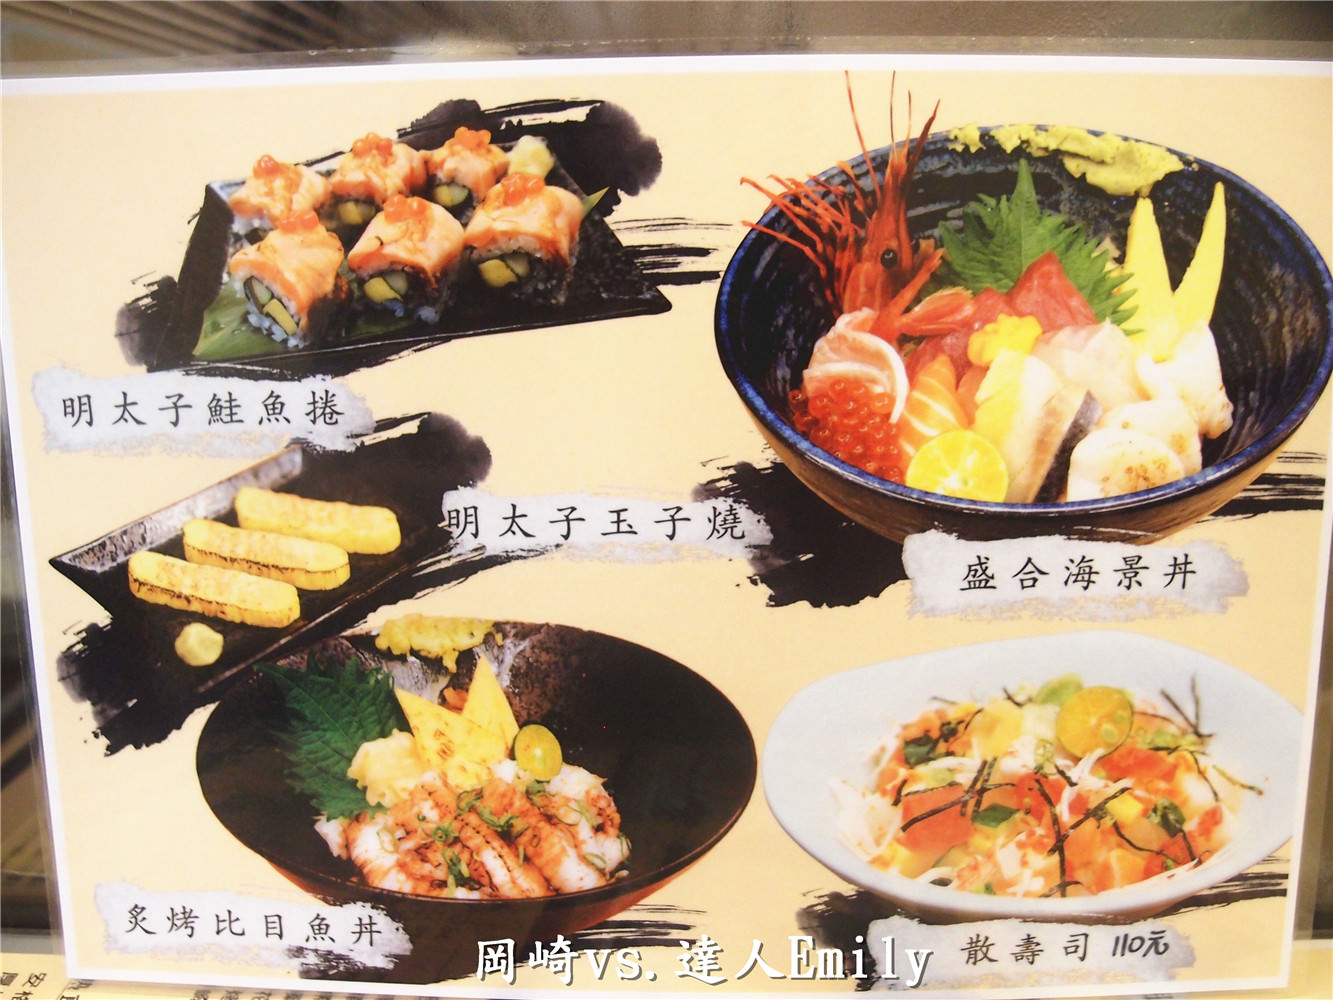 【一中街美食】巷弄內的平價美食~岡崎日本料理,全部都是帥哥來服務喔!